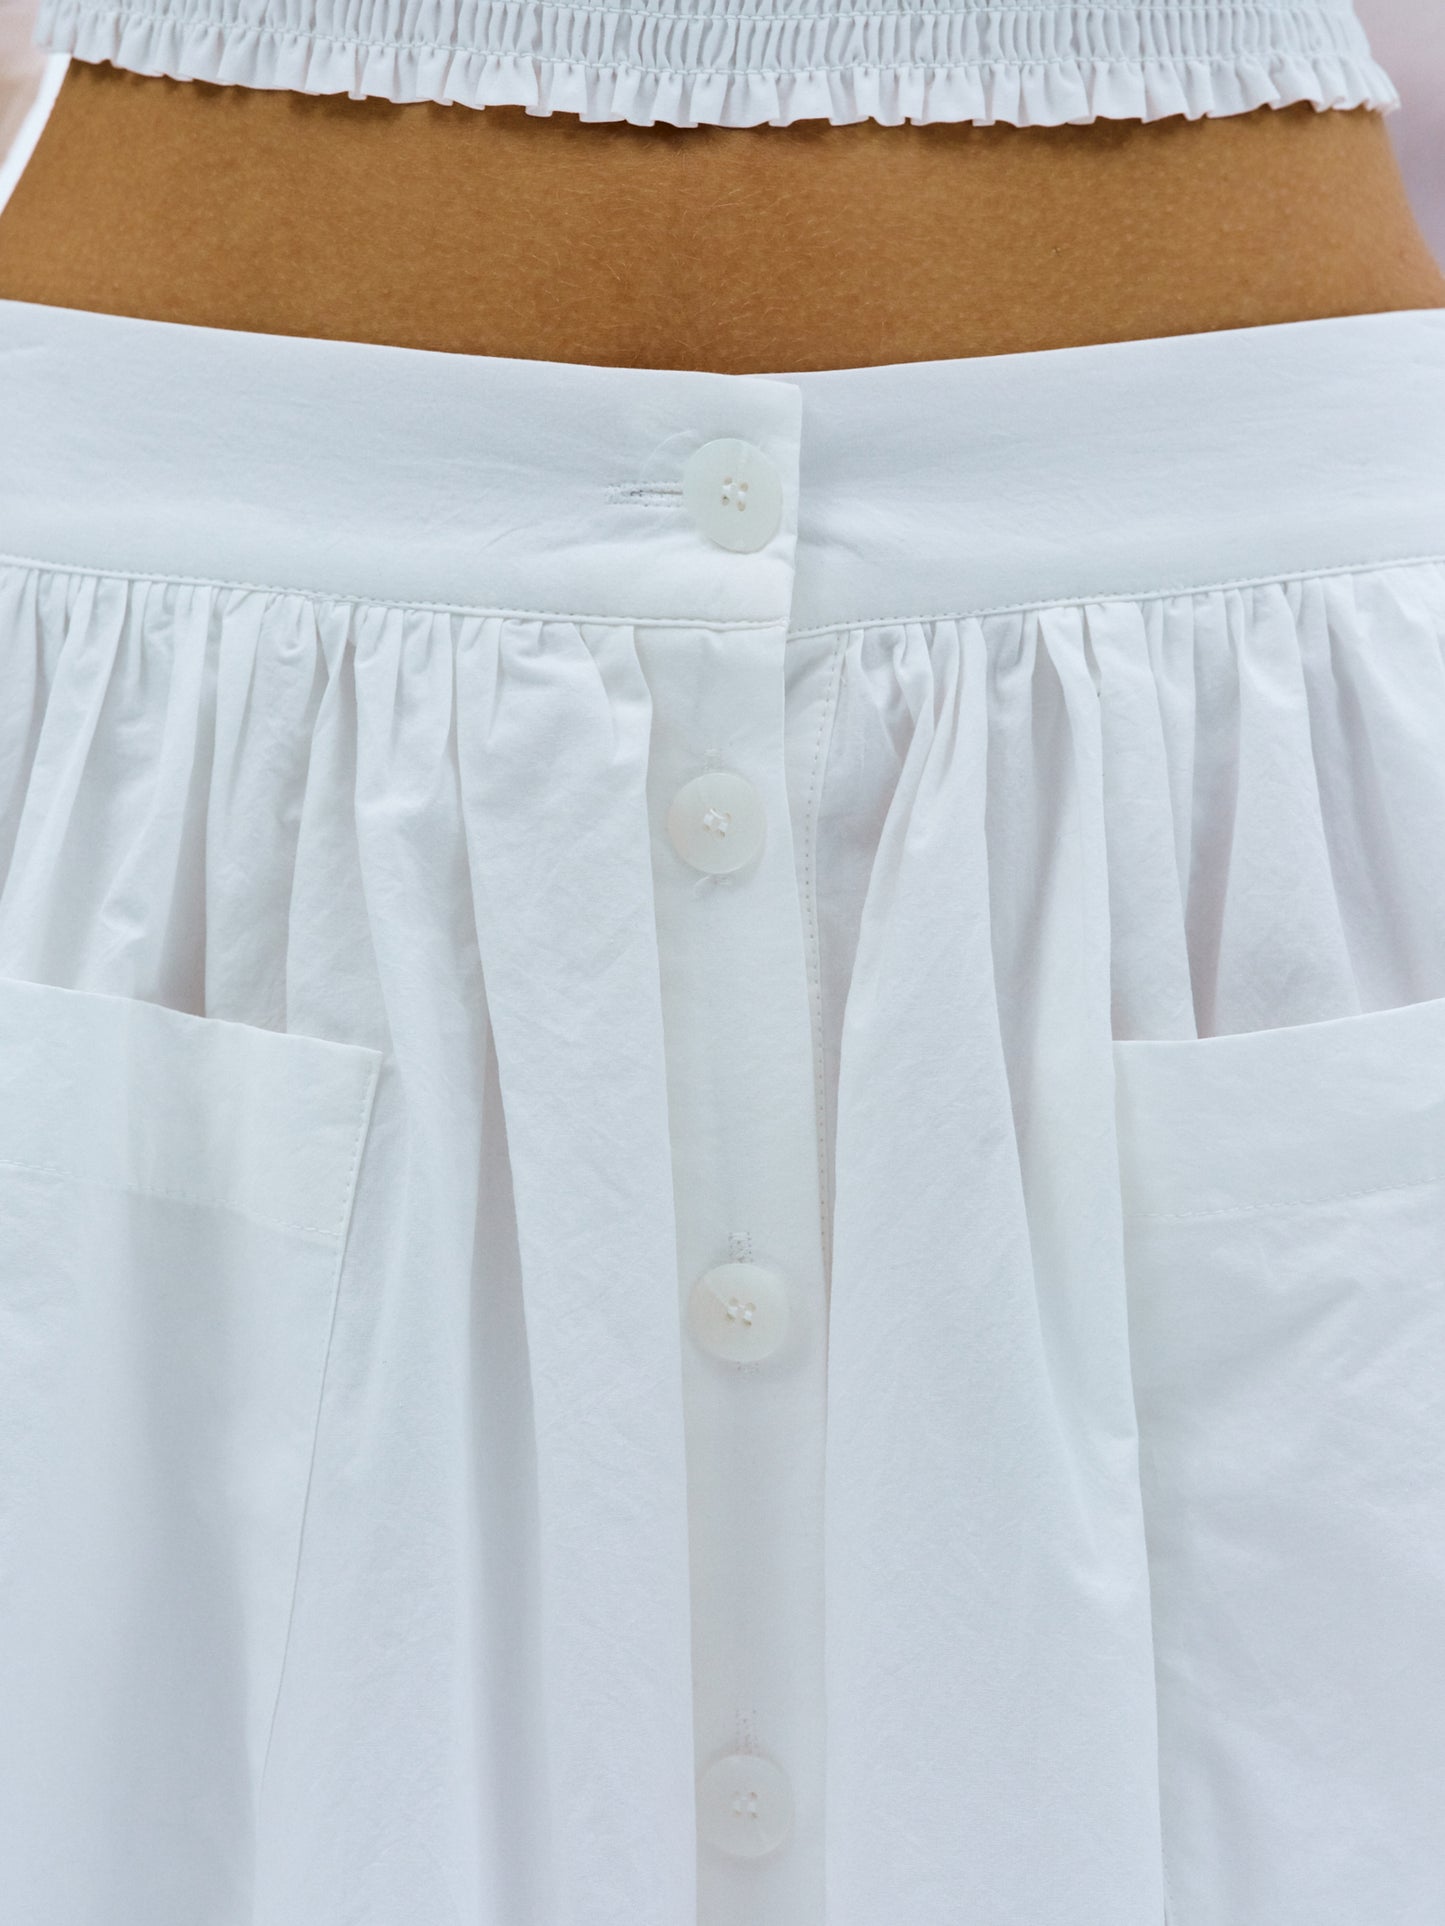 Clover Cotton-Voile Skirt, White